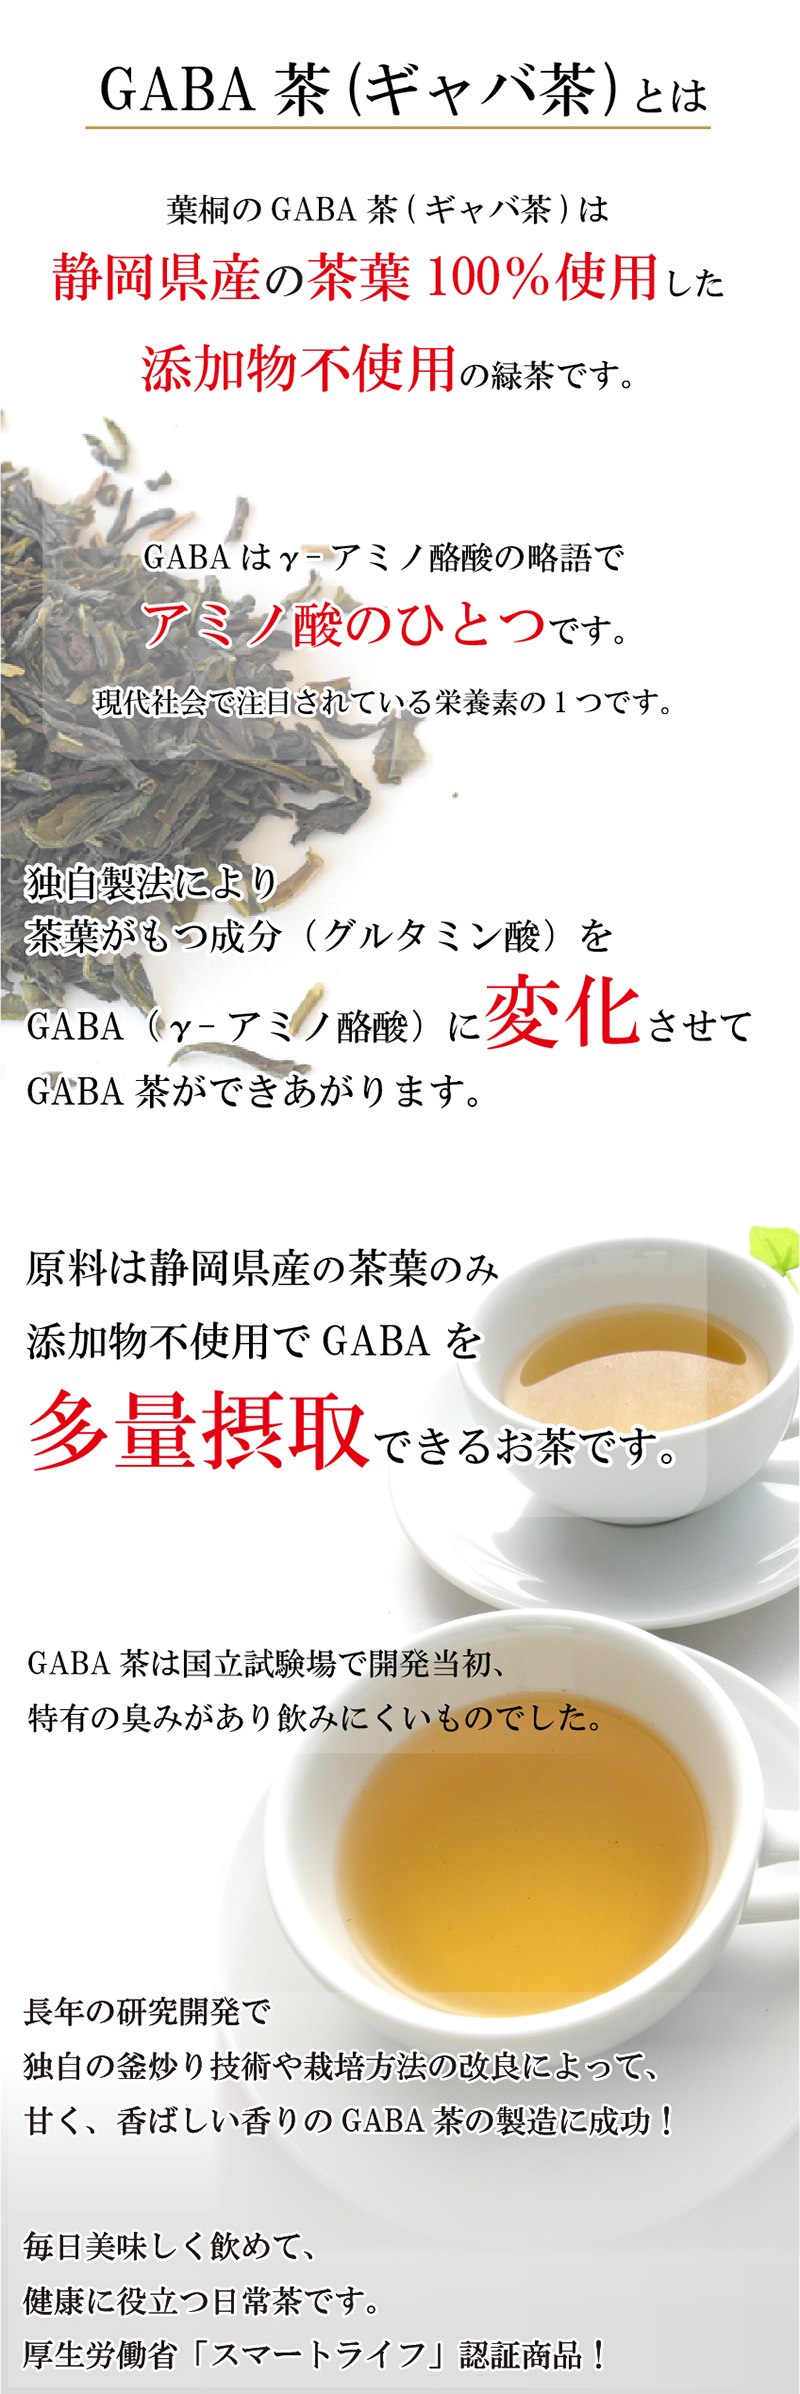 GABA茶とは